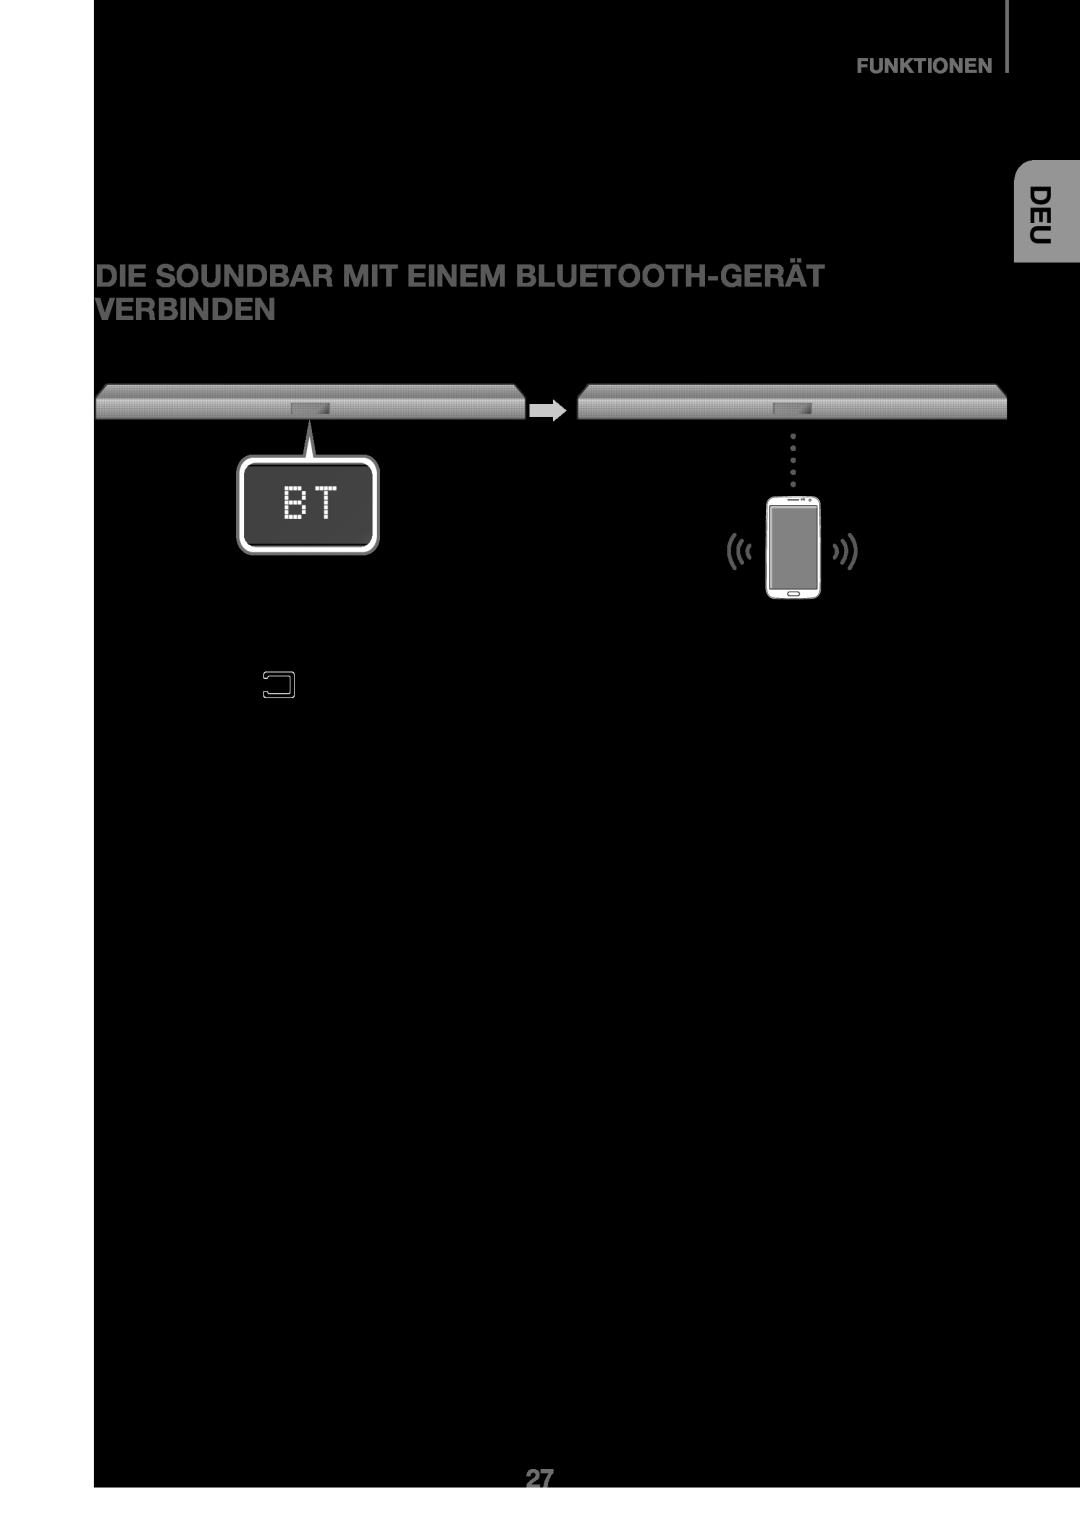 Samsung HW-J450/EN, HW-K450/EN, HW-J450/ZF Die Soundbar Mit Einem Bluetooth-Gerät Verbinden, Funktionen, 1. Drücken Sie die 